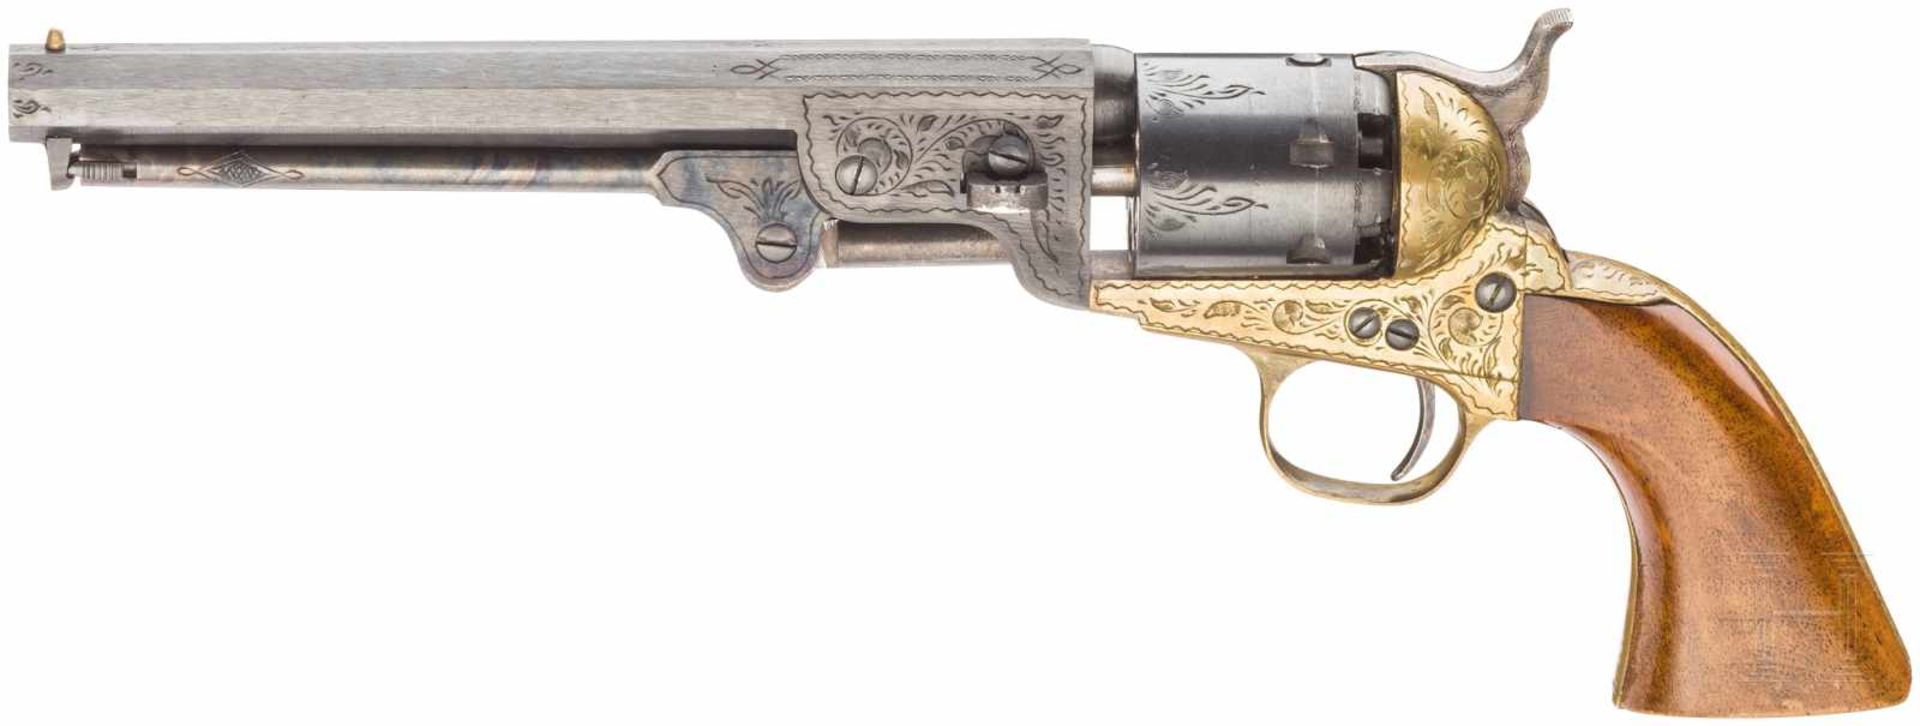 Colt Mod. 1861 Navy, ItalienKal. .36 Blackpowder, Nr. 41819, Blanker Oktagonallauf, Länge 7-1/2". - Bild 2 aus 2